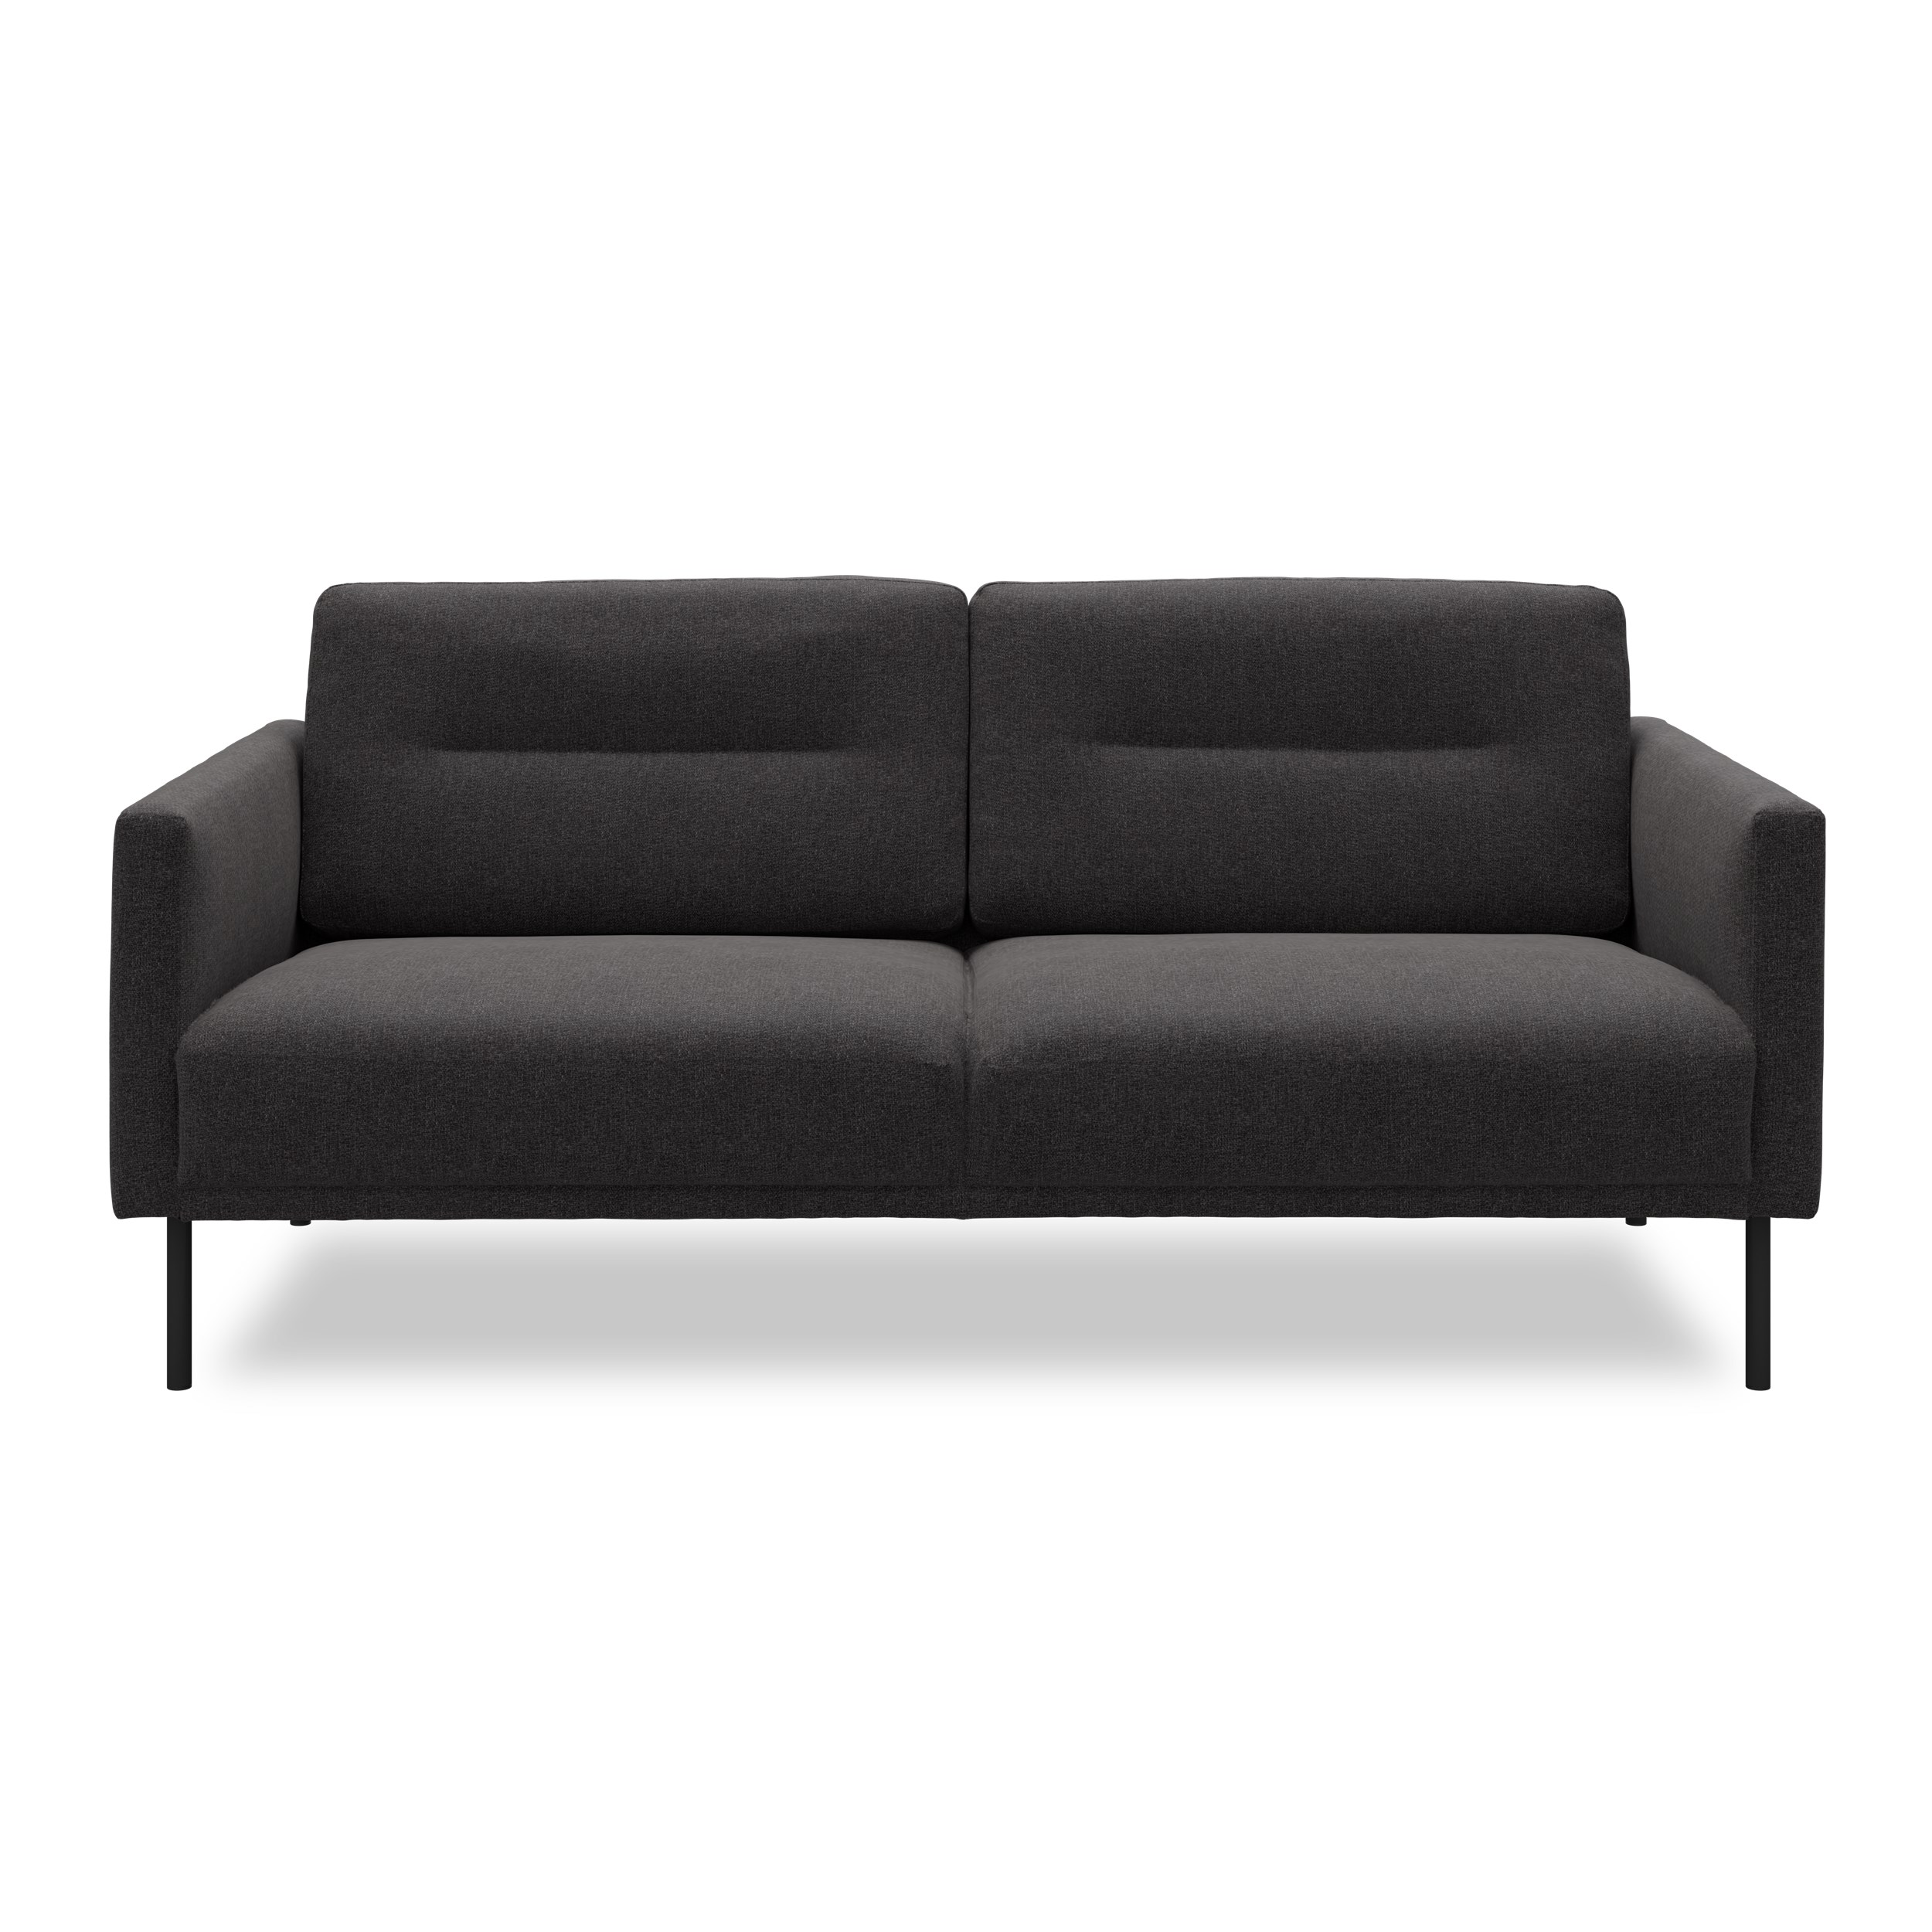 Larvik 2½ pers. Sofa - Hampton 370 Antracite stof og ben i sortlakeret metal